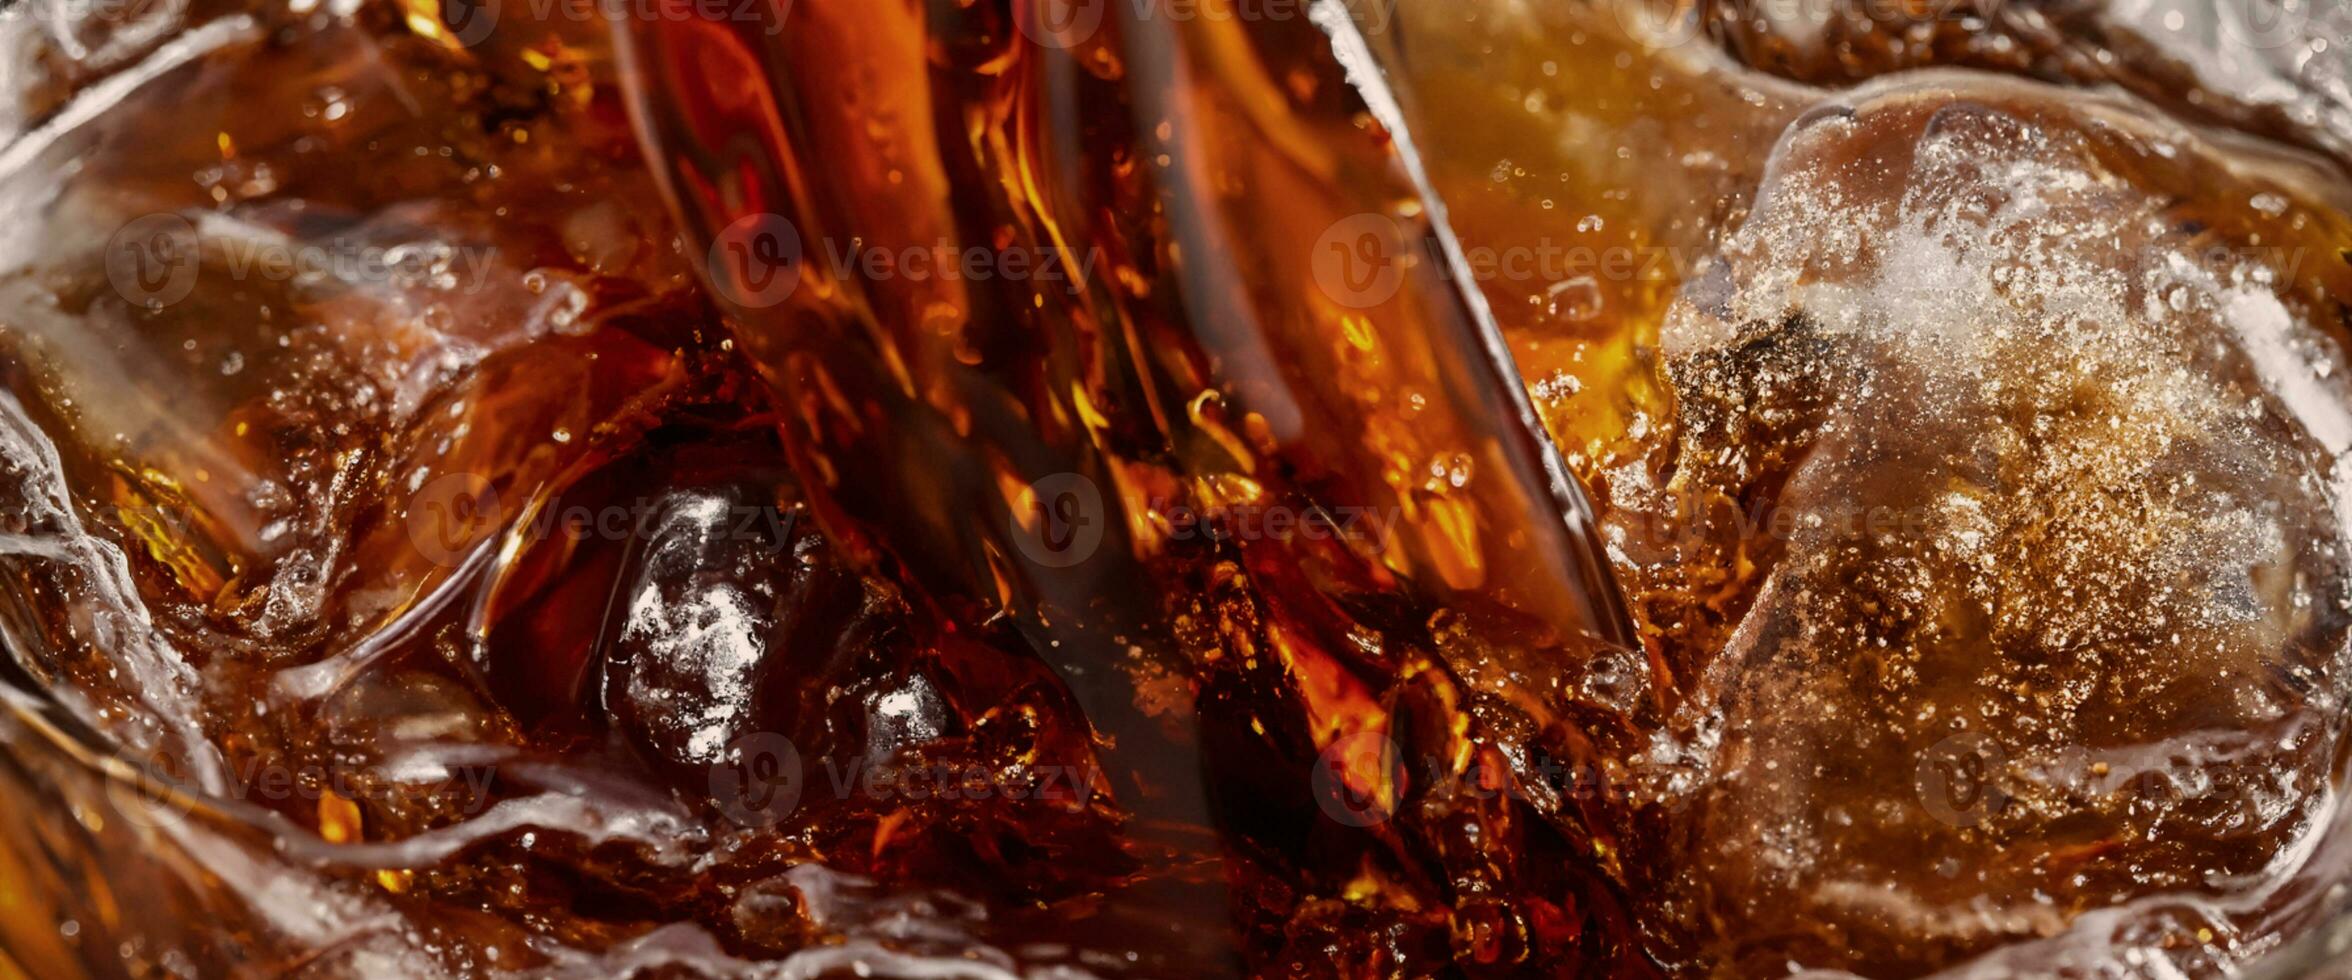 Cola refrigerante e gelo espirrando efervescendo ou flutuando acima para topo do superfície foto